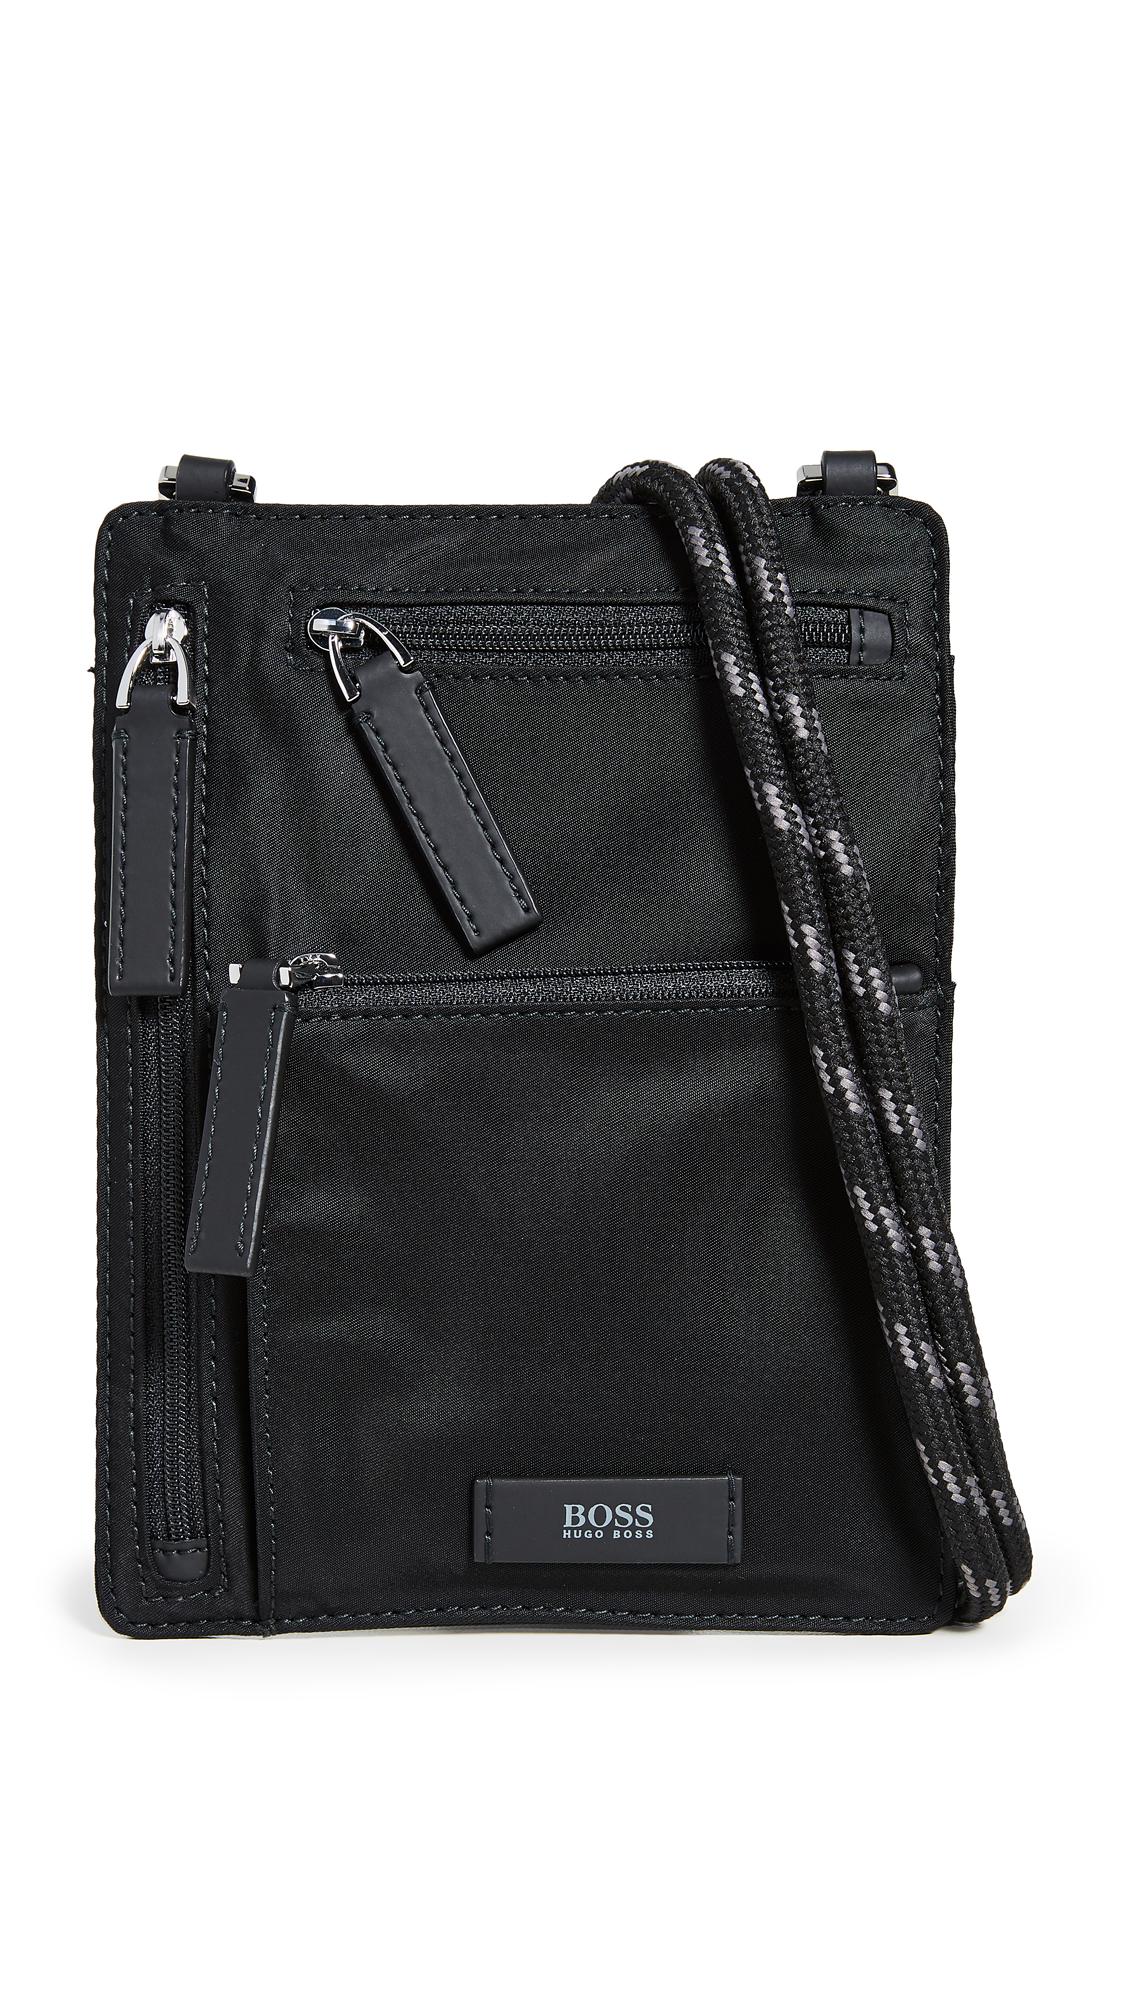 BOSS by Hugo Boss Meridian Lanyard Pouch in Black for Men - Lyst